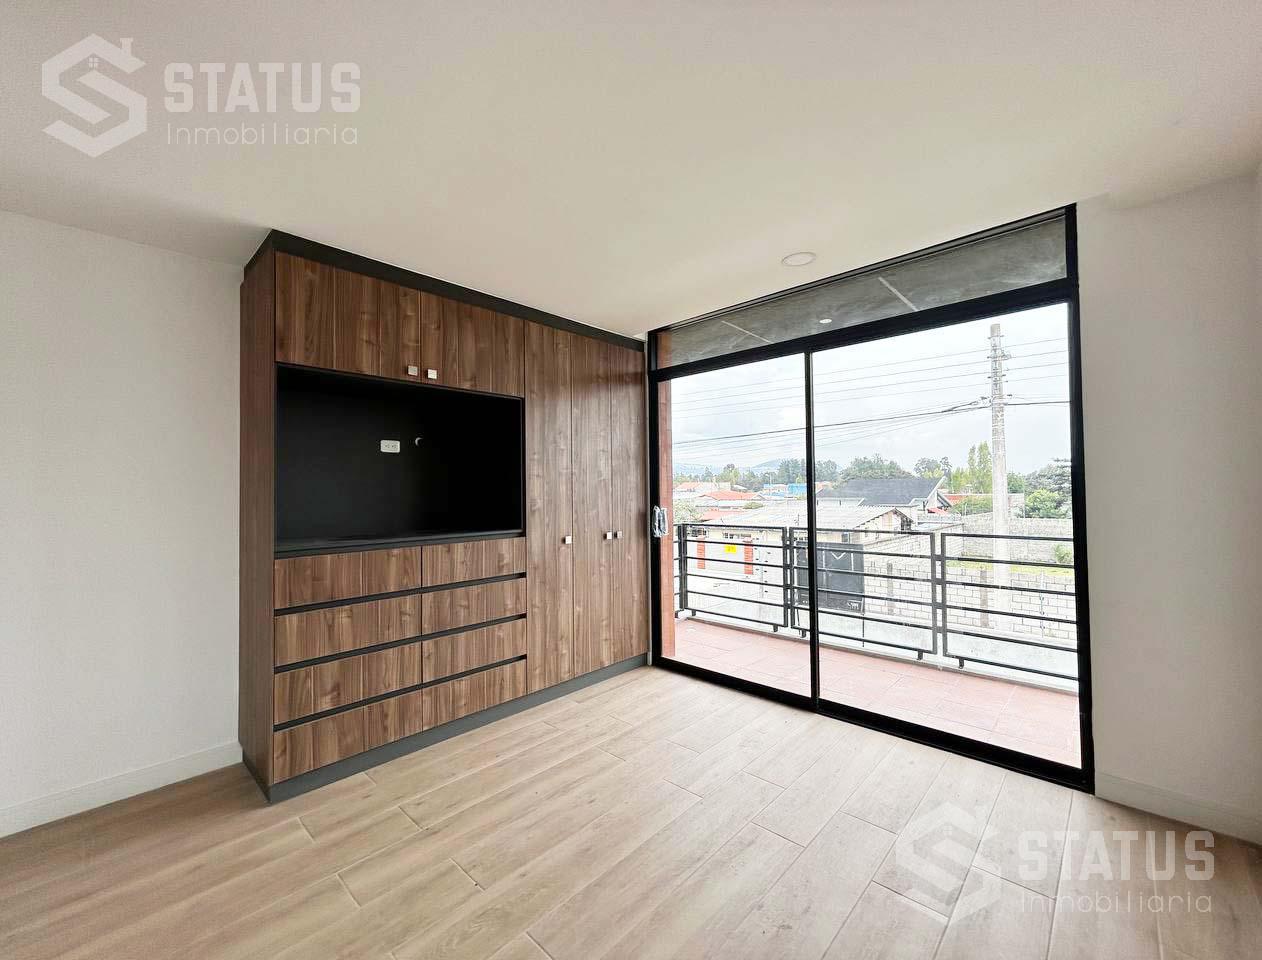 Vendo casa en conjunto 130 m, 3 Dorm., 2 Garajes, sector El Dean – Los Chillos, desde $116.000